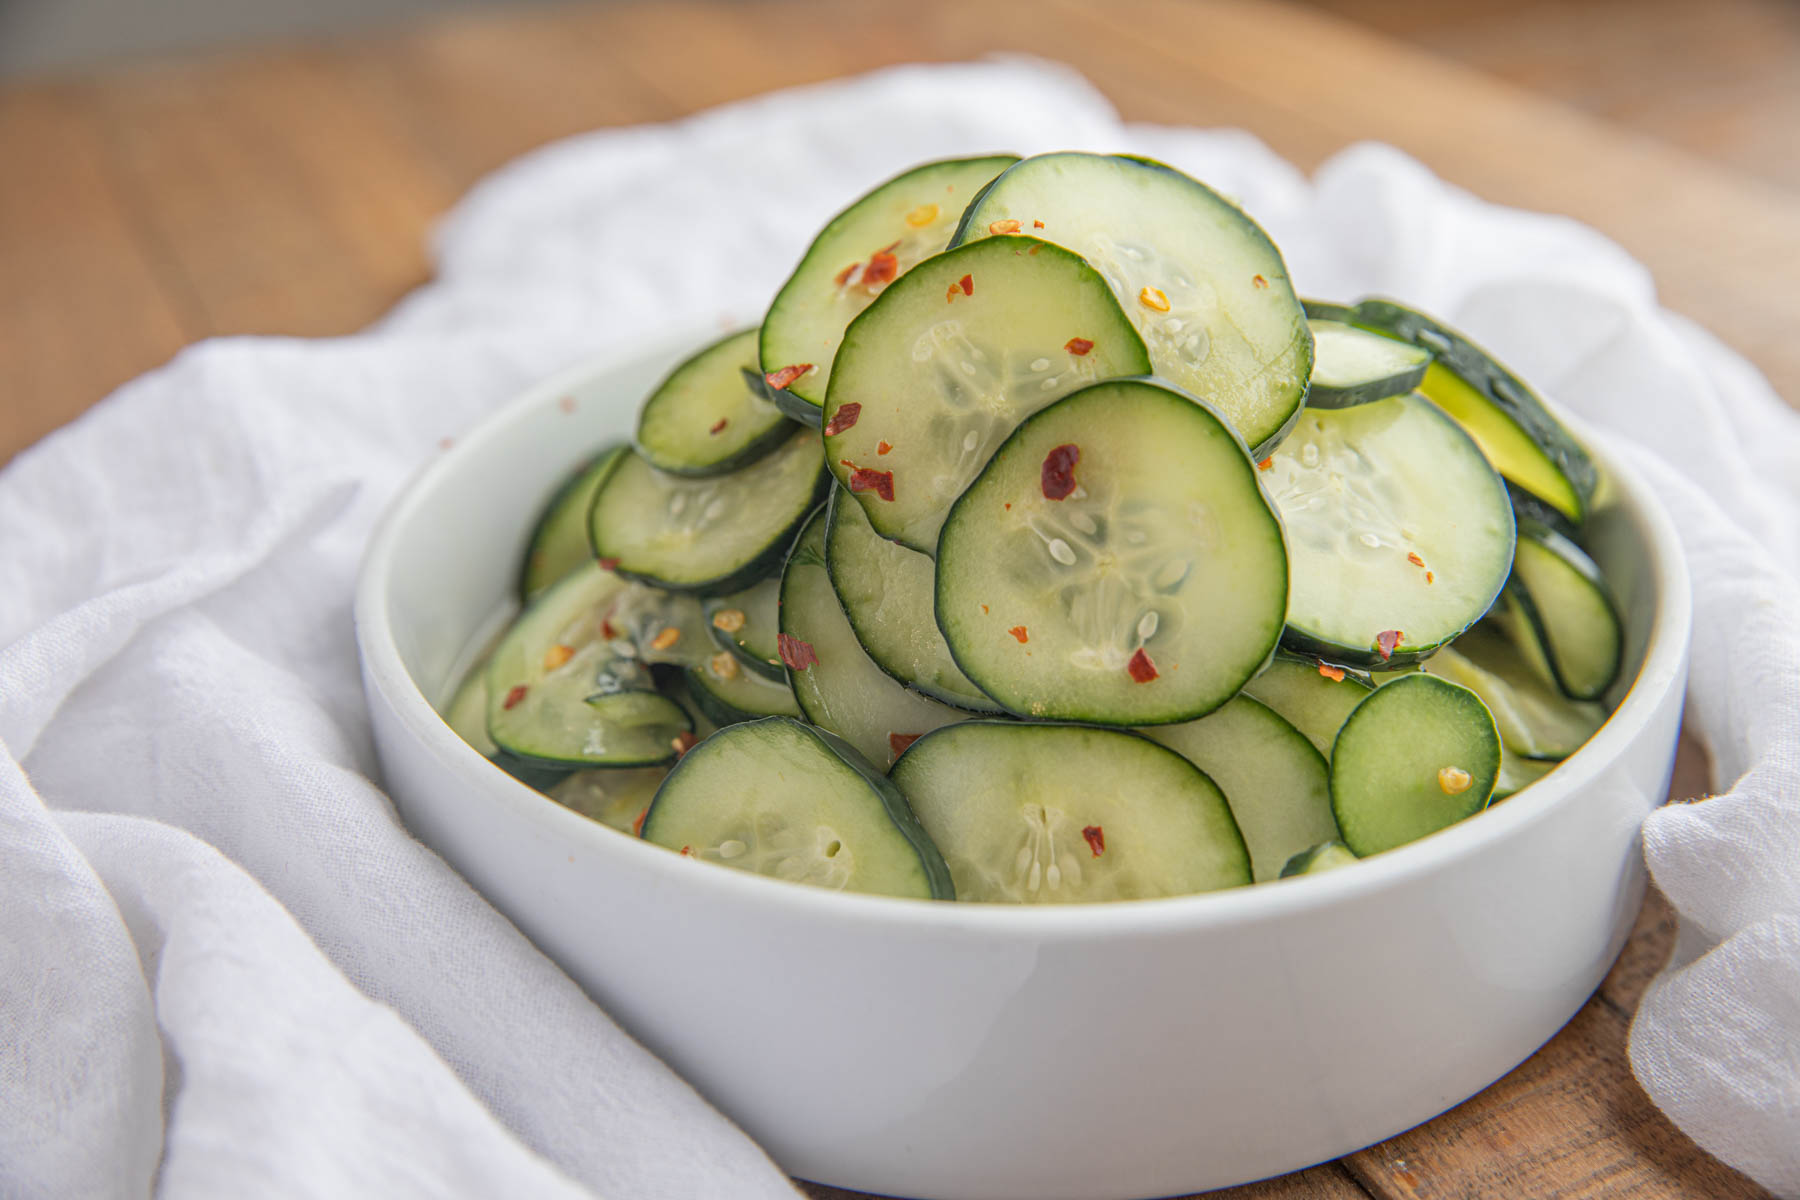 Quick Pickled Cucumber Slices